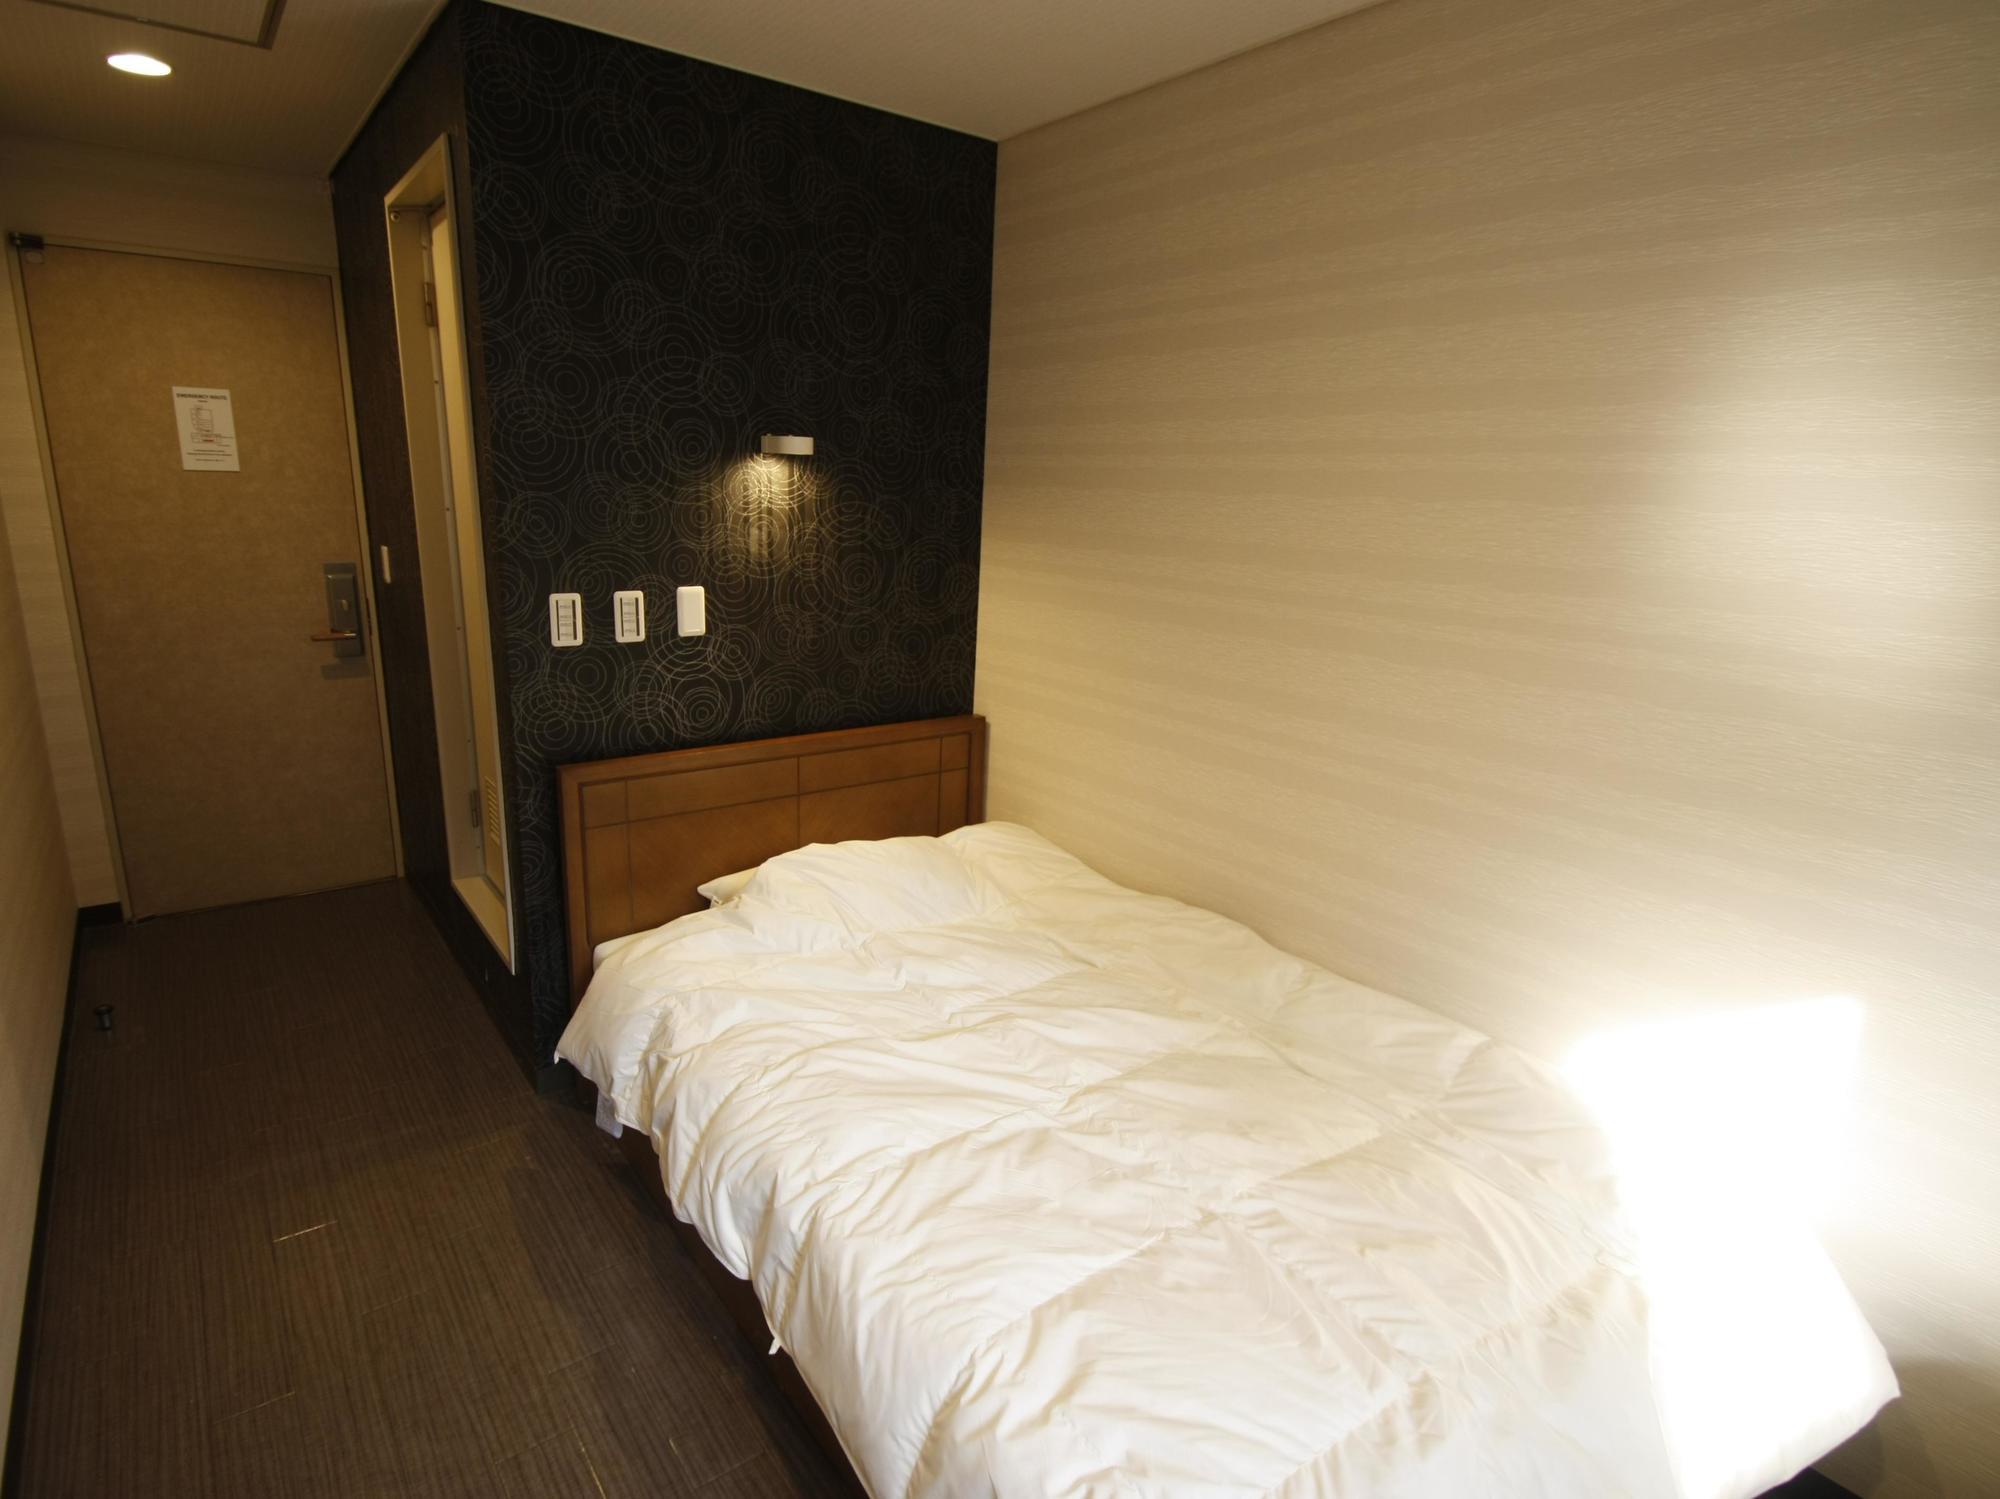 โอ๊คโฮสเทล เซน โตเกียว 2* (ญี่ปุ่น) - จาก 1045 Thb | Hotelmix